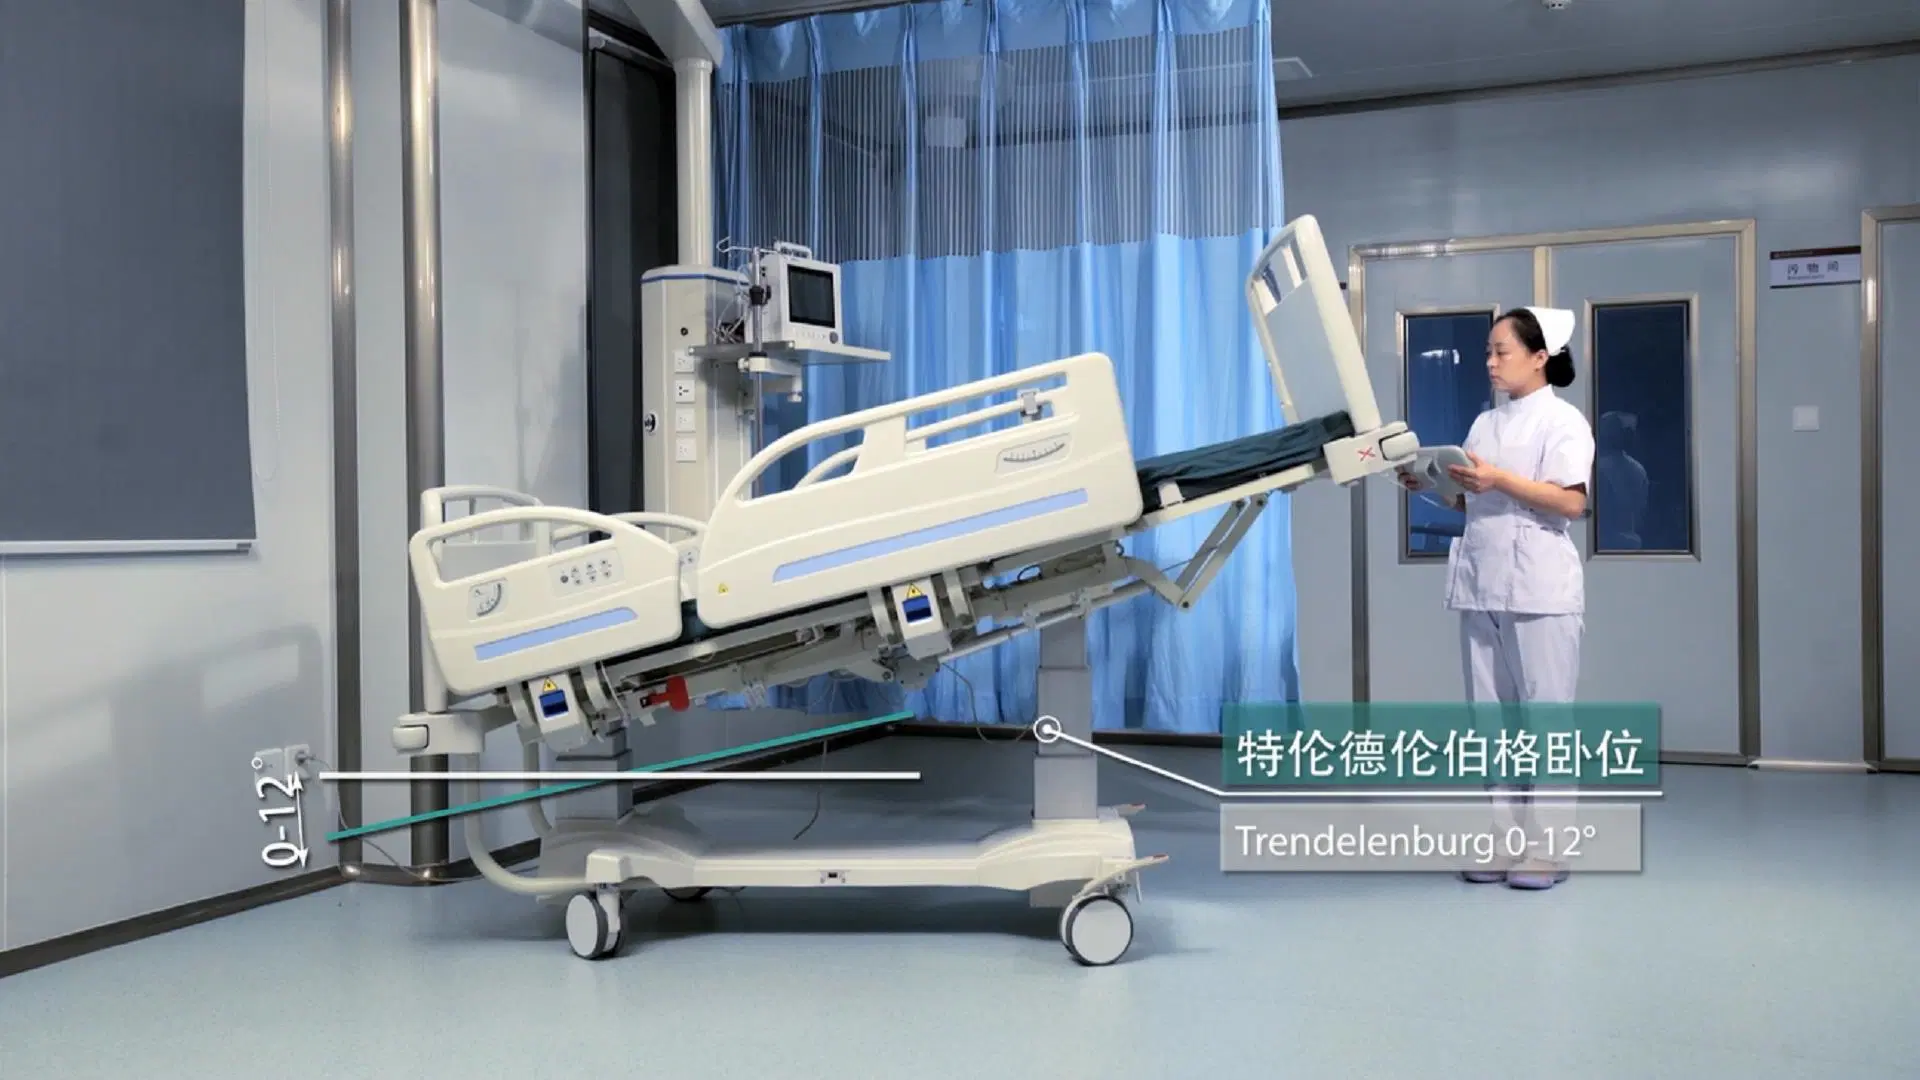 Cama eléctrica multifunção Enfermeira do paciente na UTI médica Ward cama de hospital